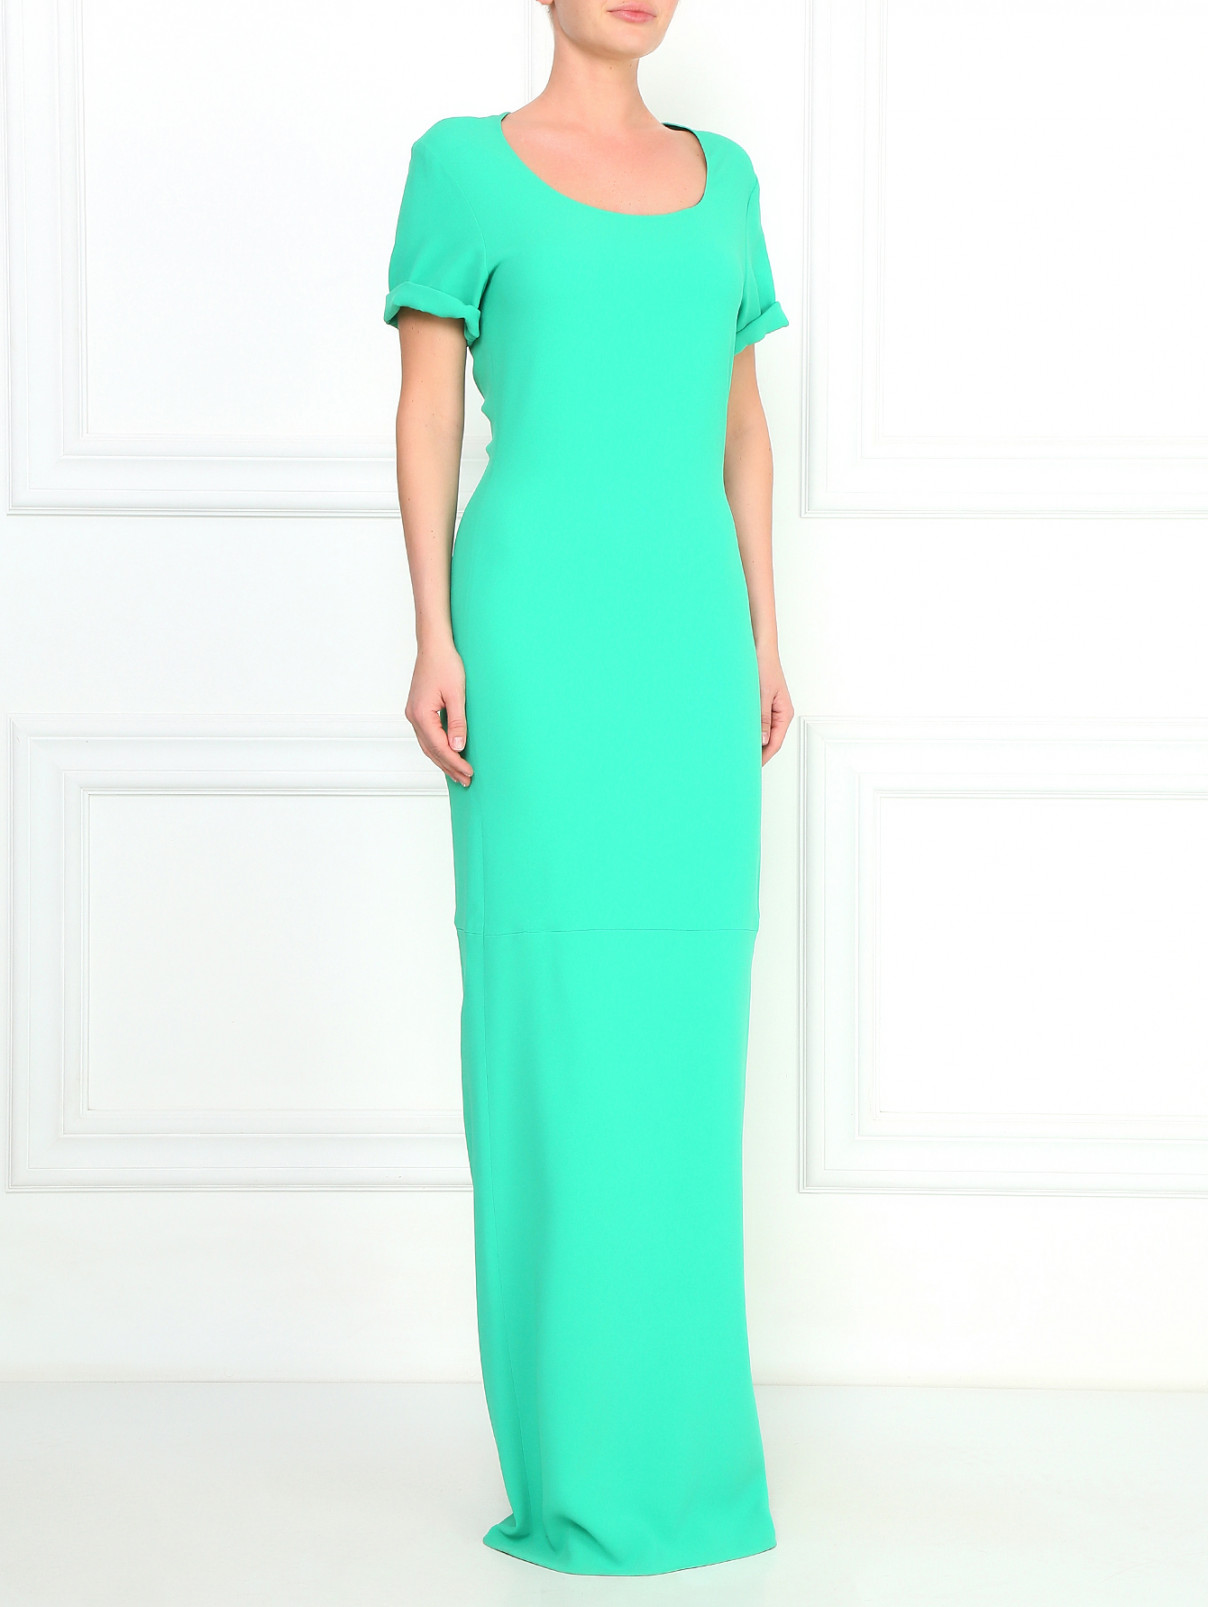 Платье-макси с разрезом сзади Costume National  –  Модель Общий вид  – Цвет:  Зеленый